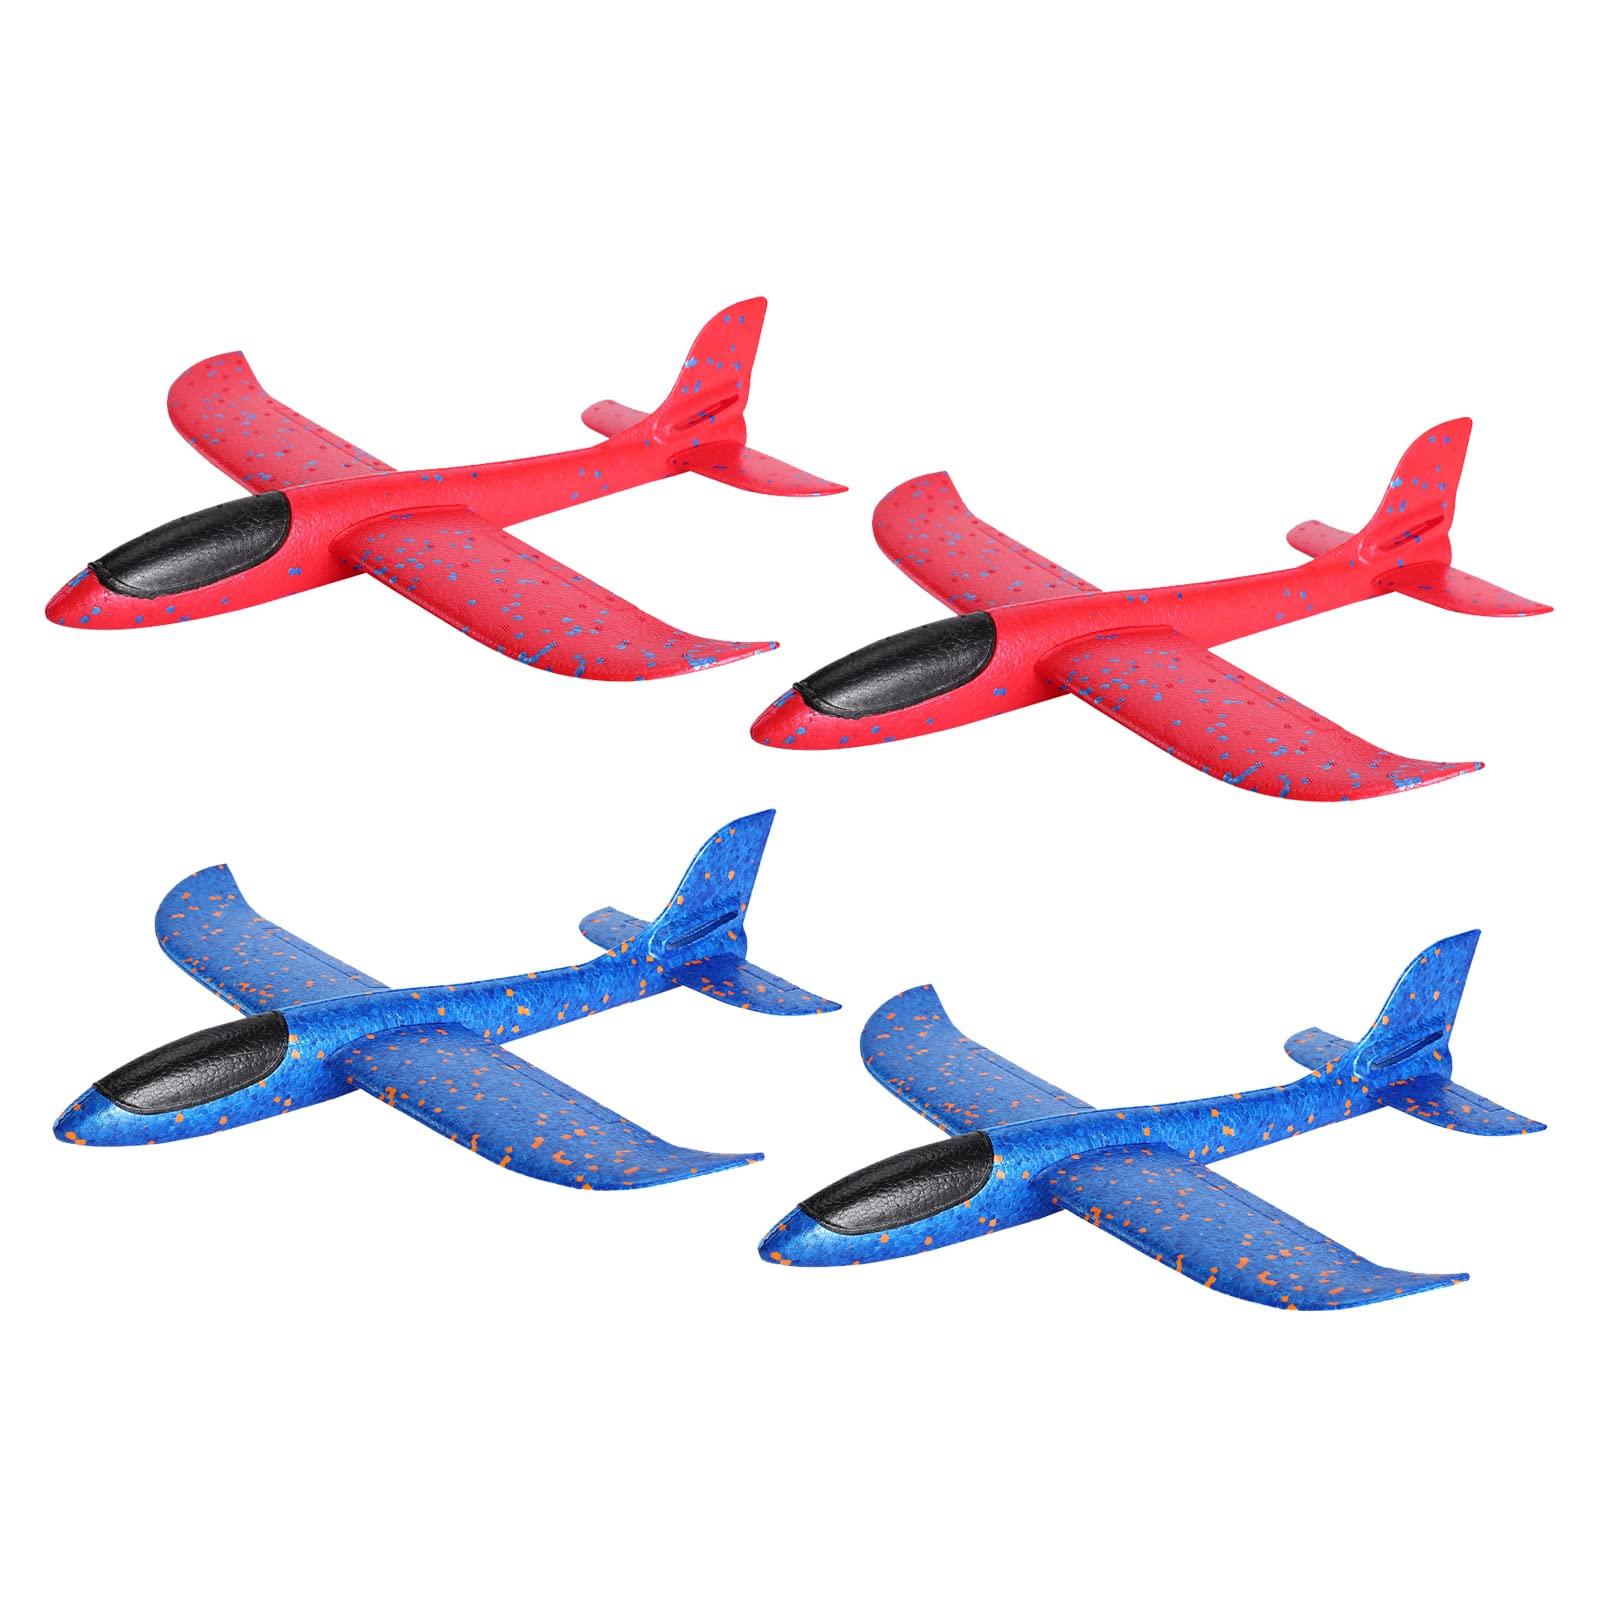 Best 3D Foam Plane: Top Picks for 3D Foam Planes